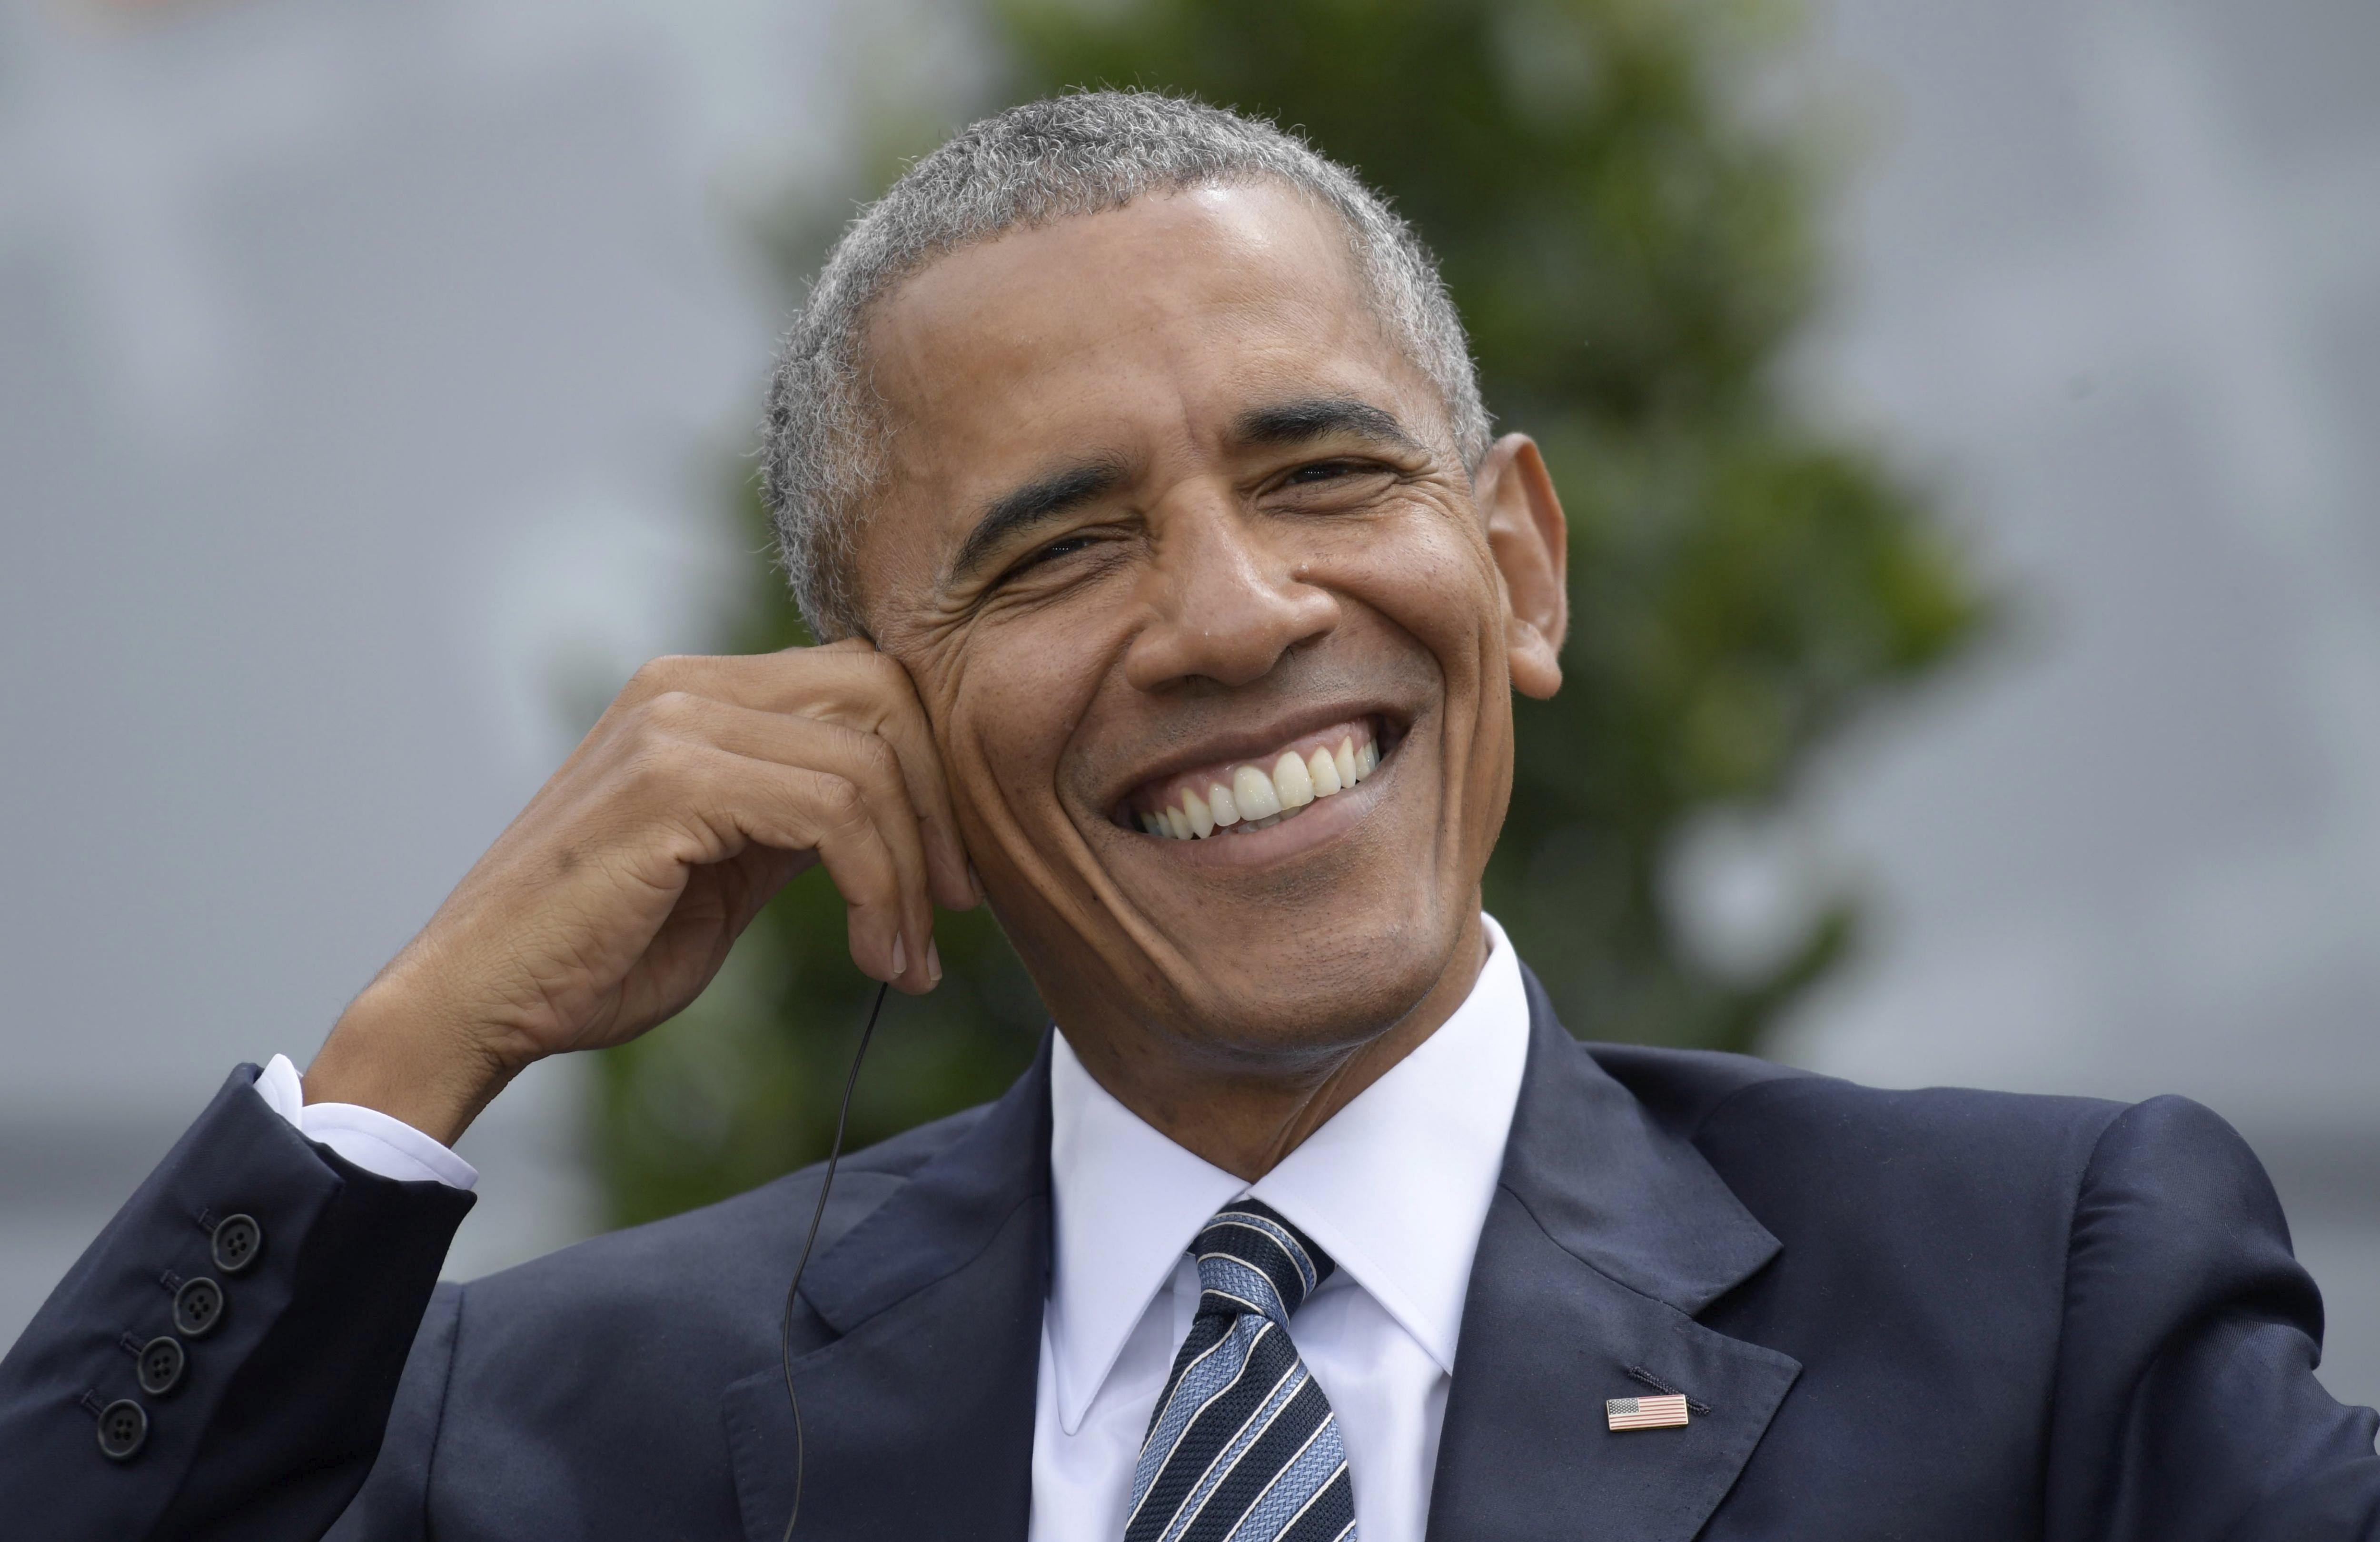 Los Obama se compran una espectacular mansión de 7 millones de euros